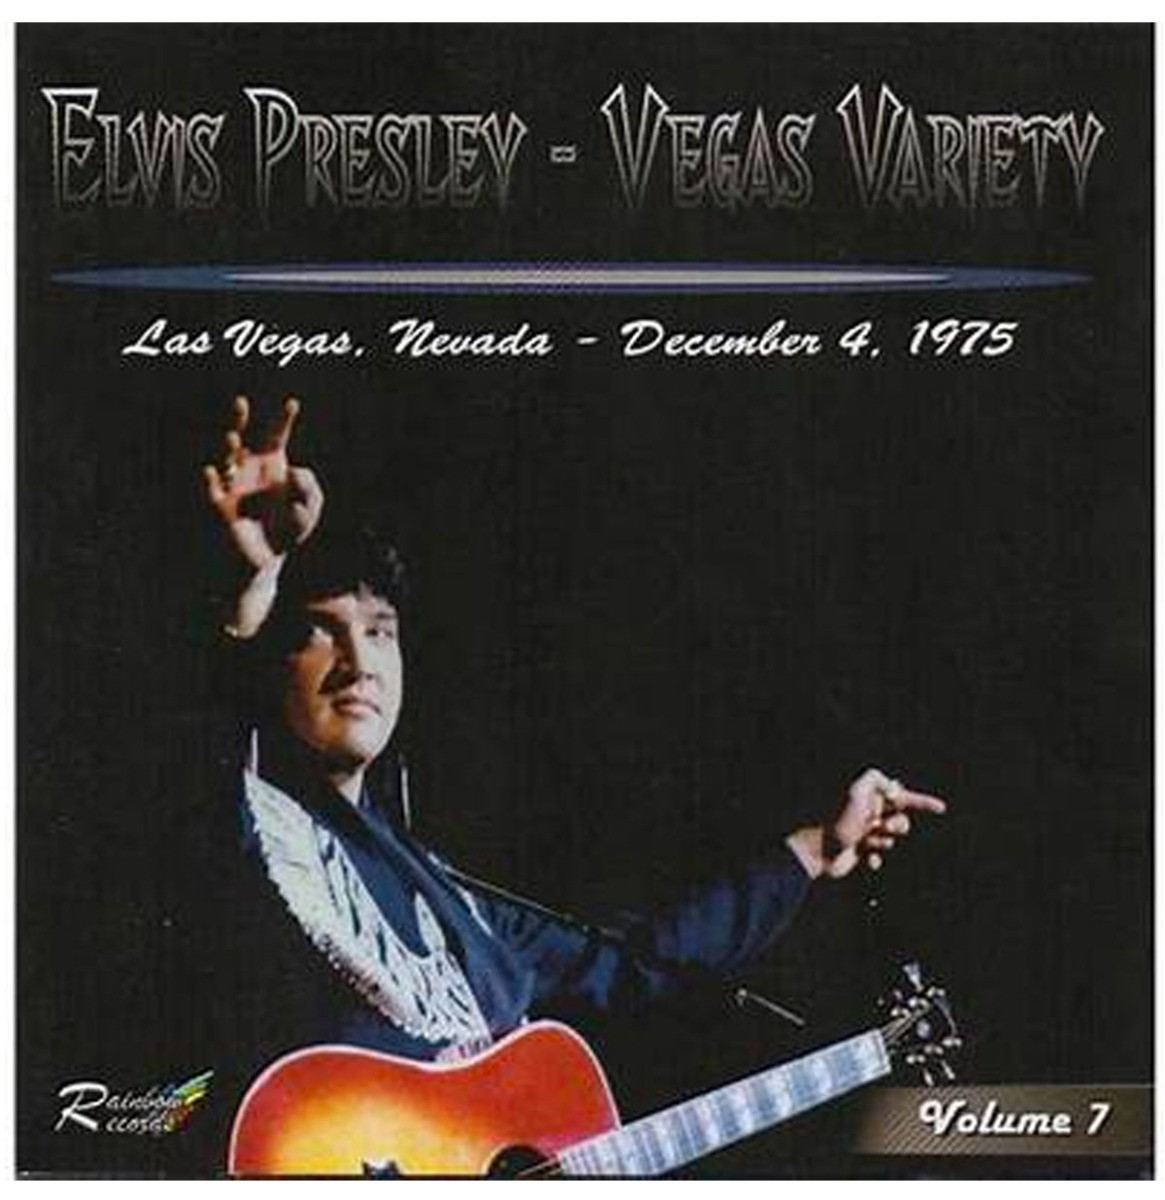 Elvis Presley - Vegas Variety Vol. 7 Las Vegas December 4 1975 CD